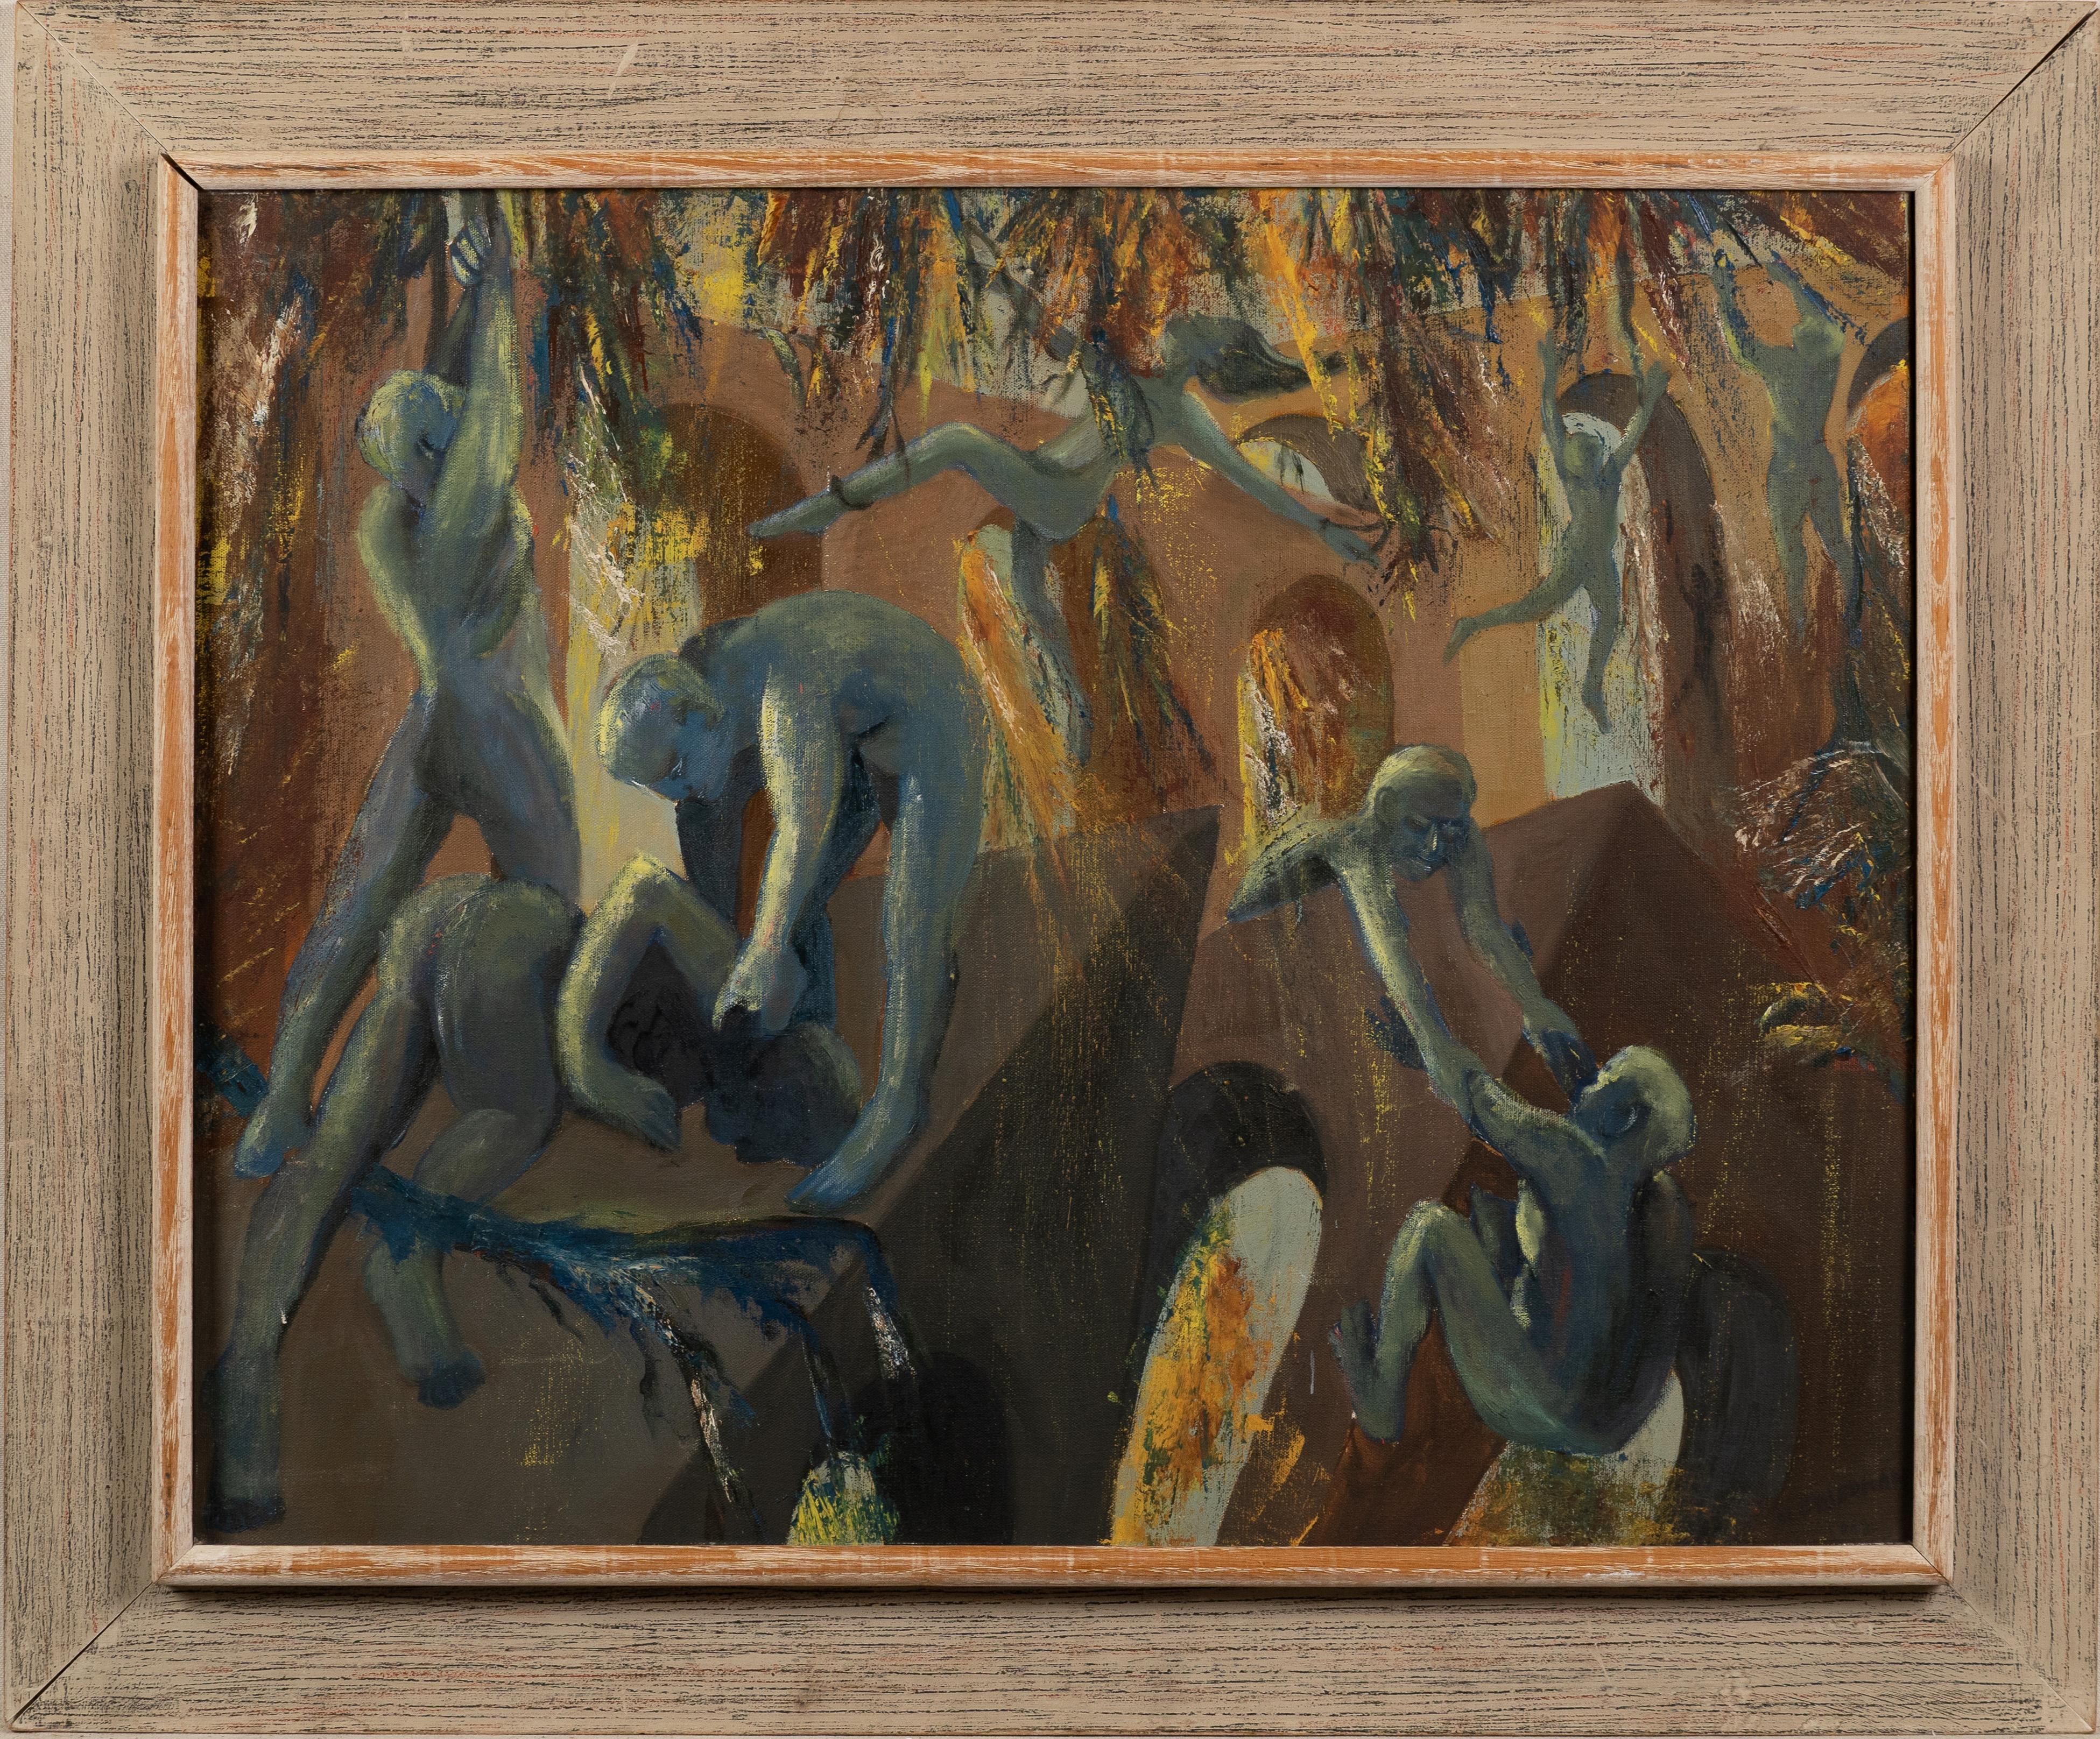 Ancienne peinture à l'huile moderniste américaine abstraite de paysage nu.  Huile sur toile.  Encadré.   Signé de manière illisible.